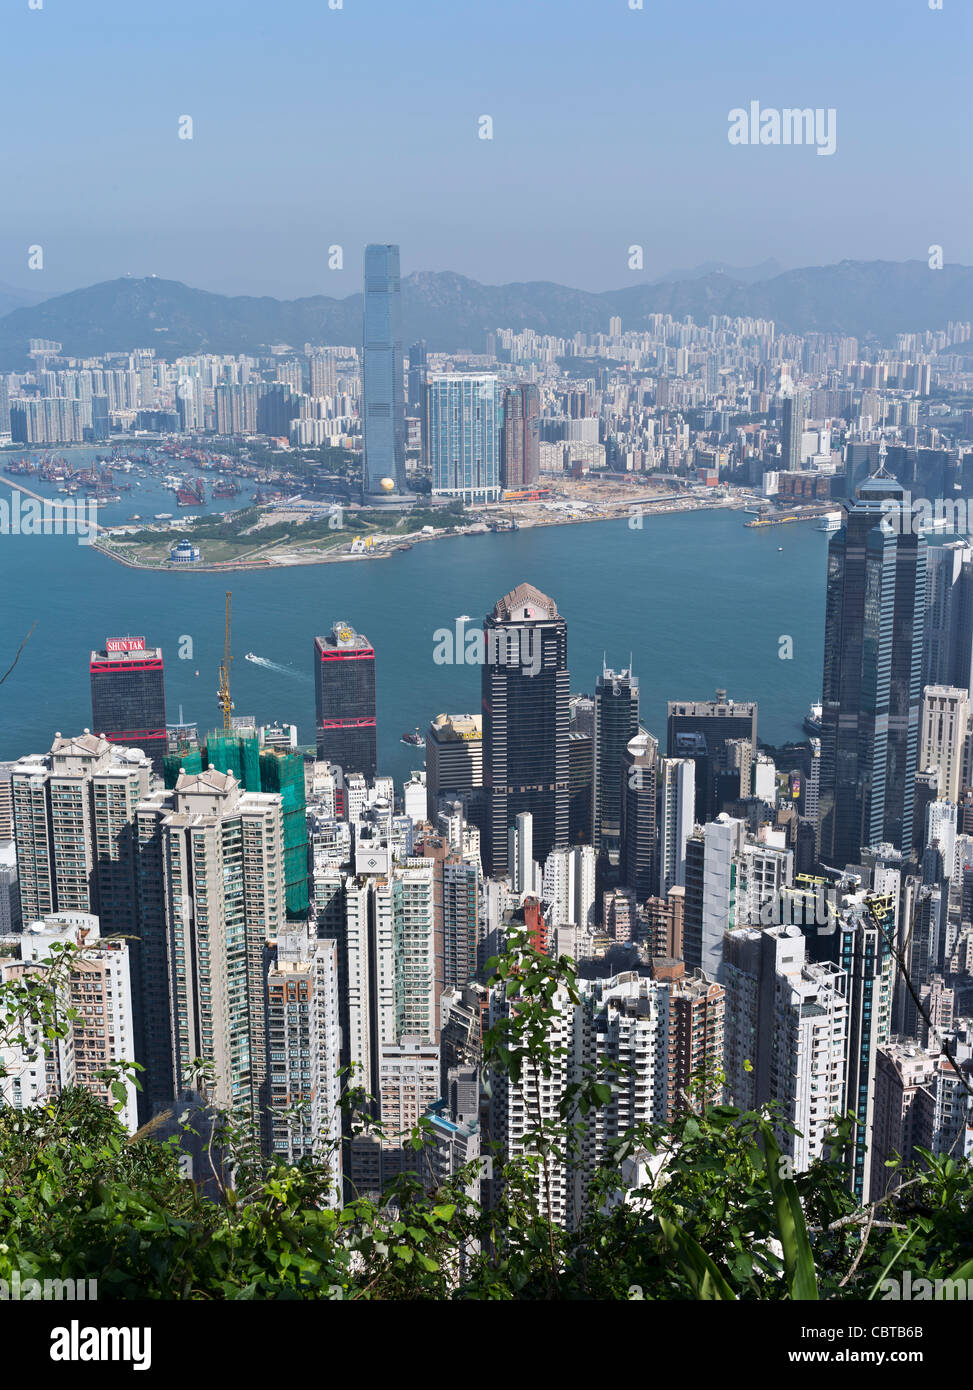 Dh Victoria Peak Blick SHEUNG WAN HONG KONG Wolkenkratzer wohnungen Hafen und West Kowloon Gebäude Stadt Gebäude tower Blocks Stockfoto